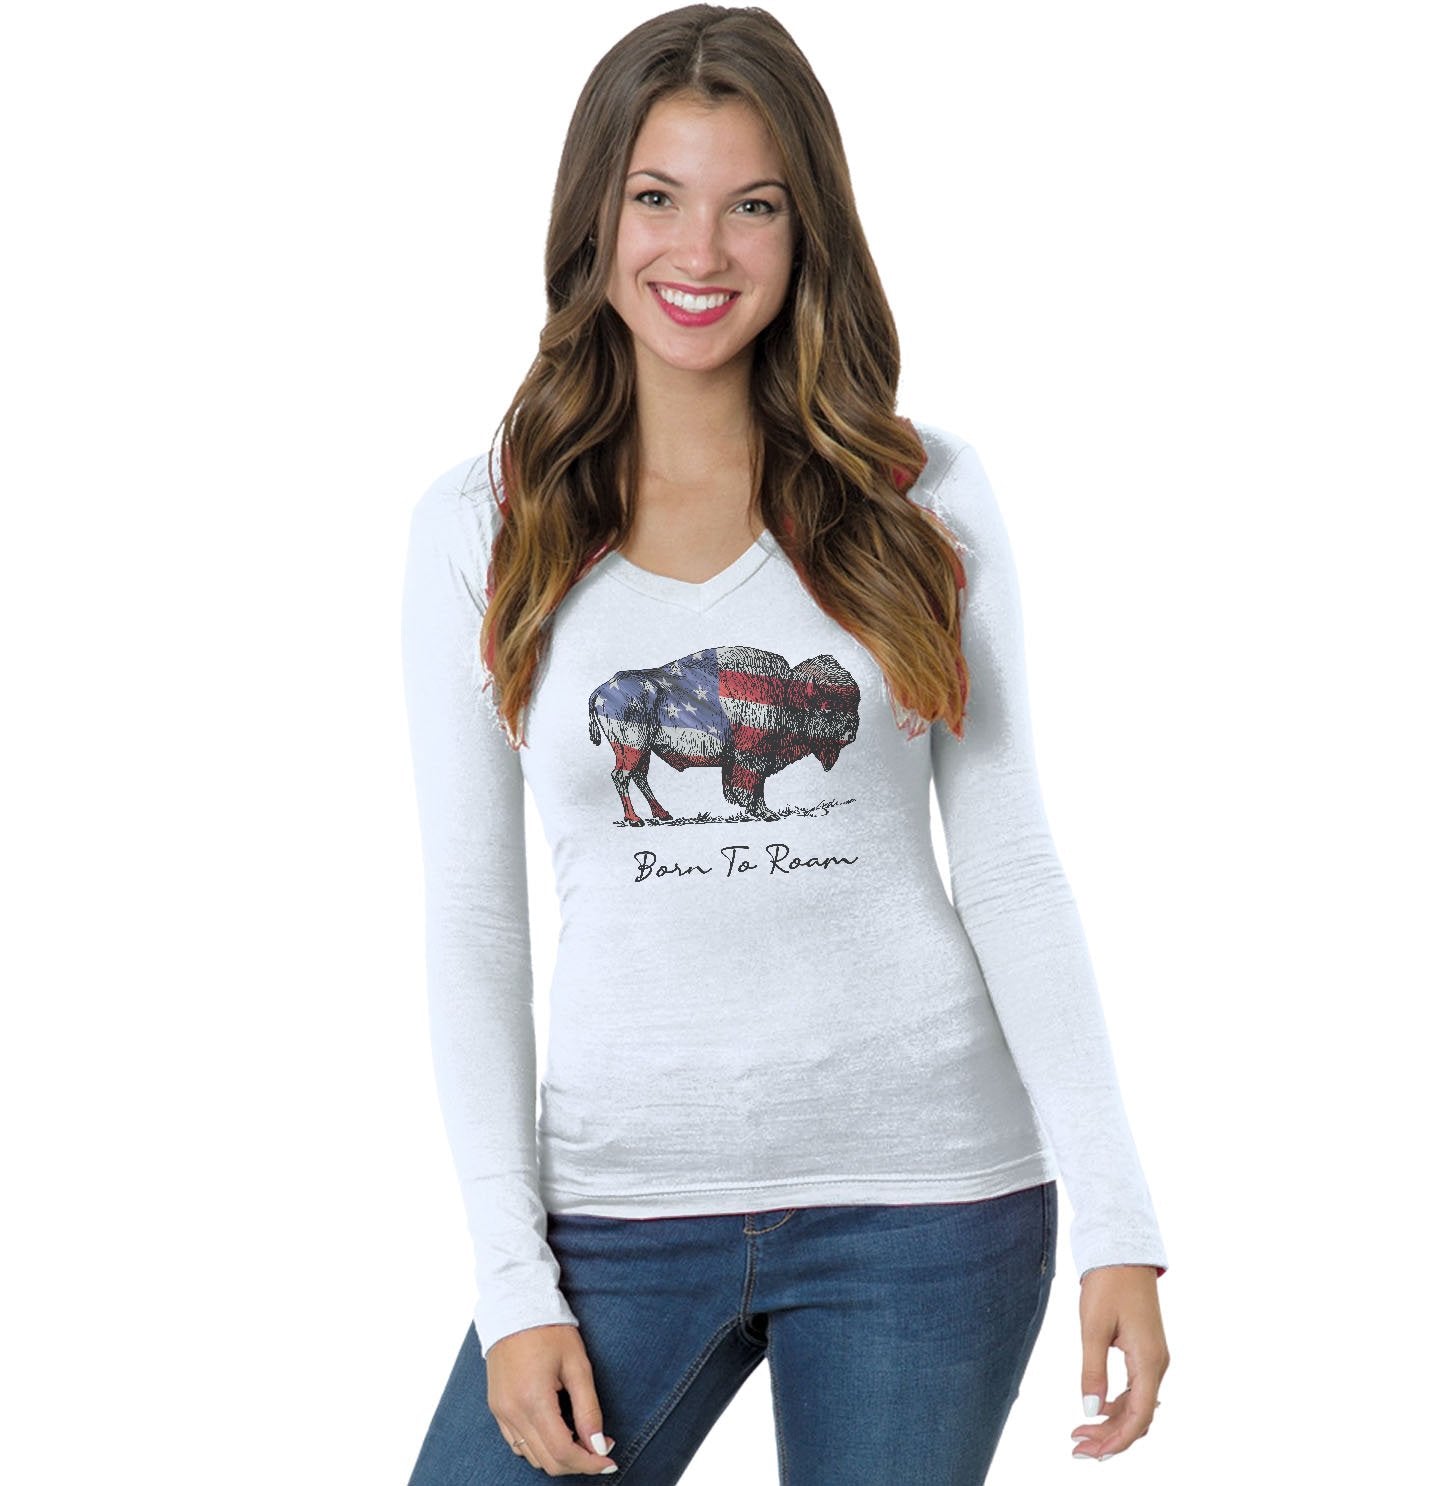 Buffalo Flag Overlay - Women's V-Neck Long Sleeve T-Shirt